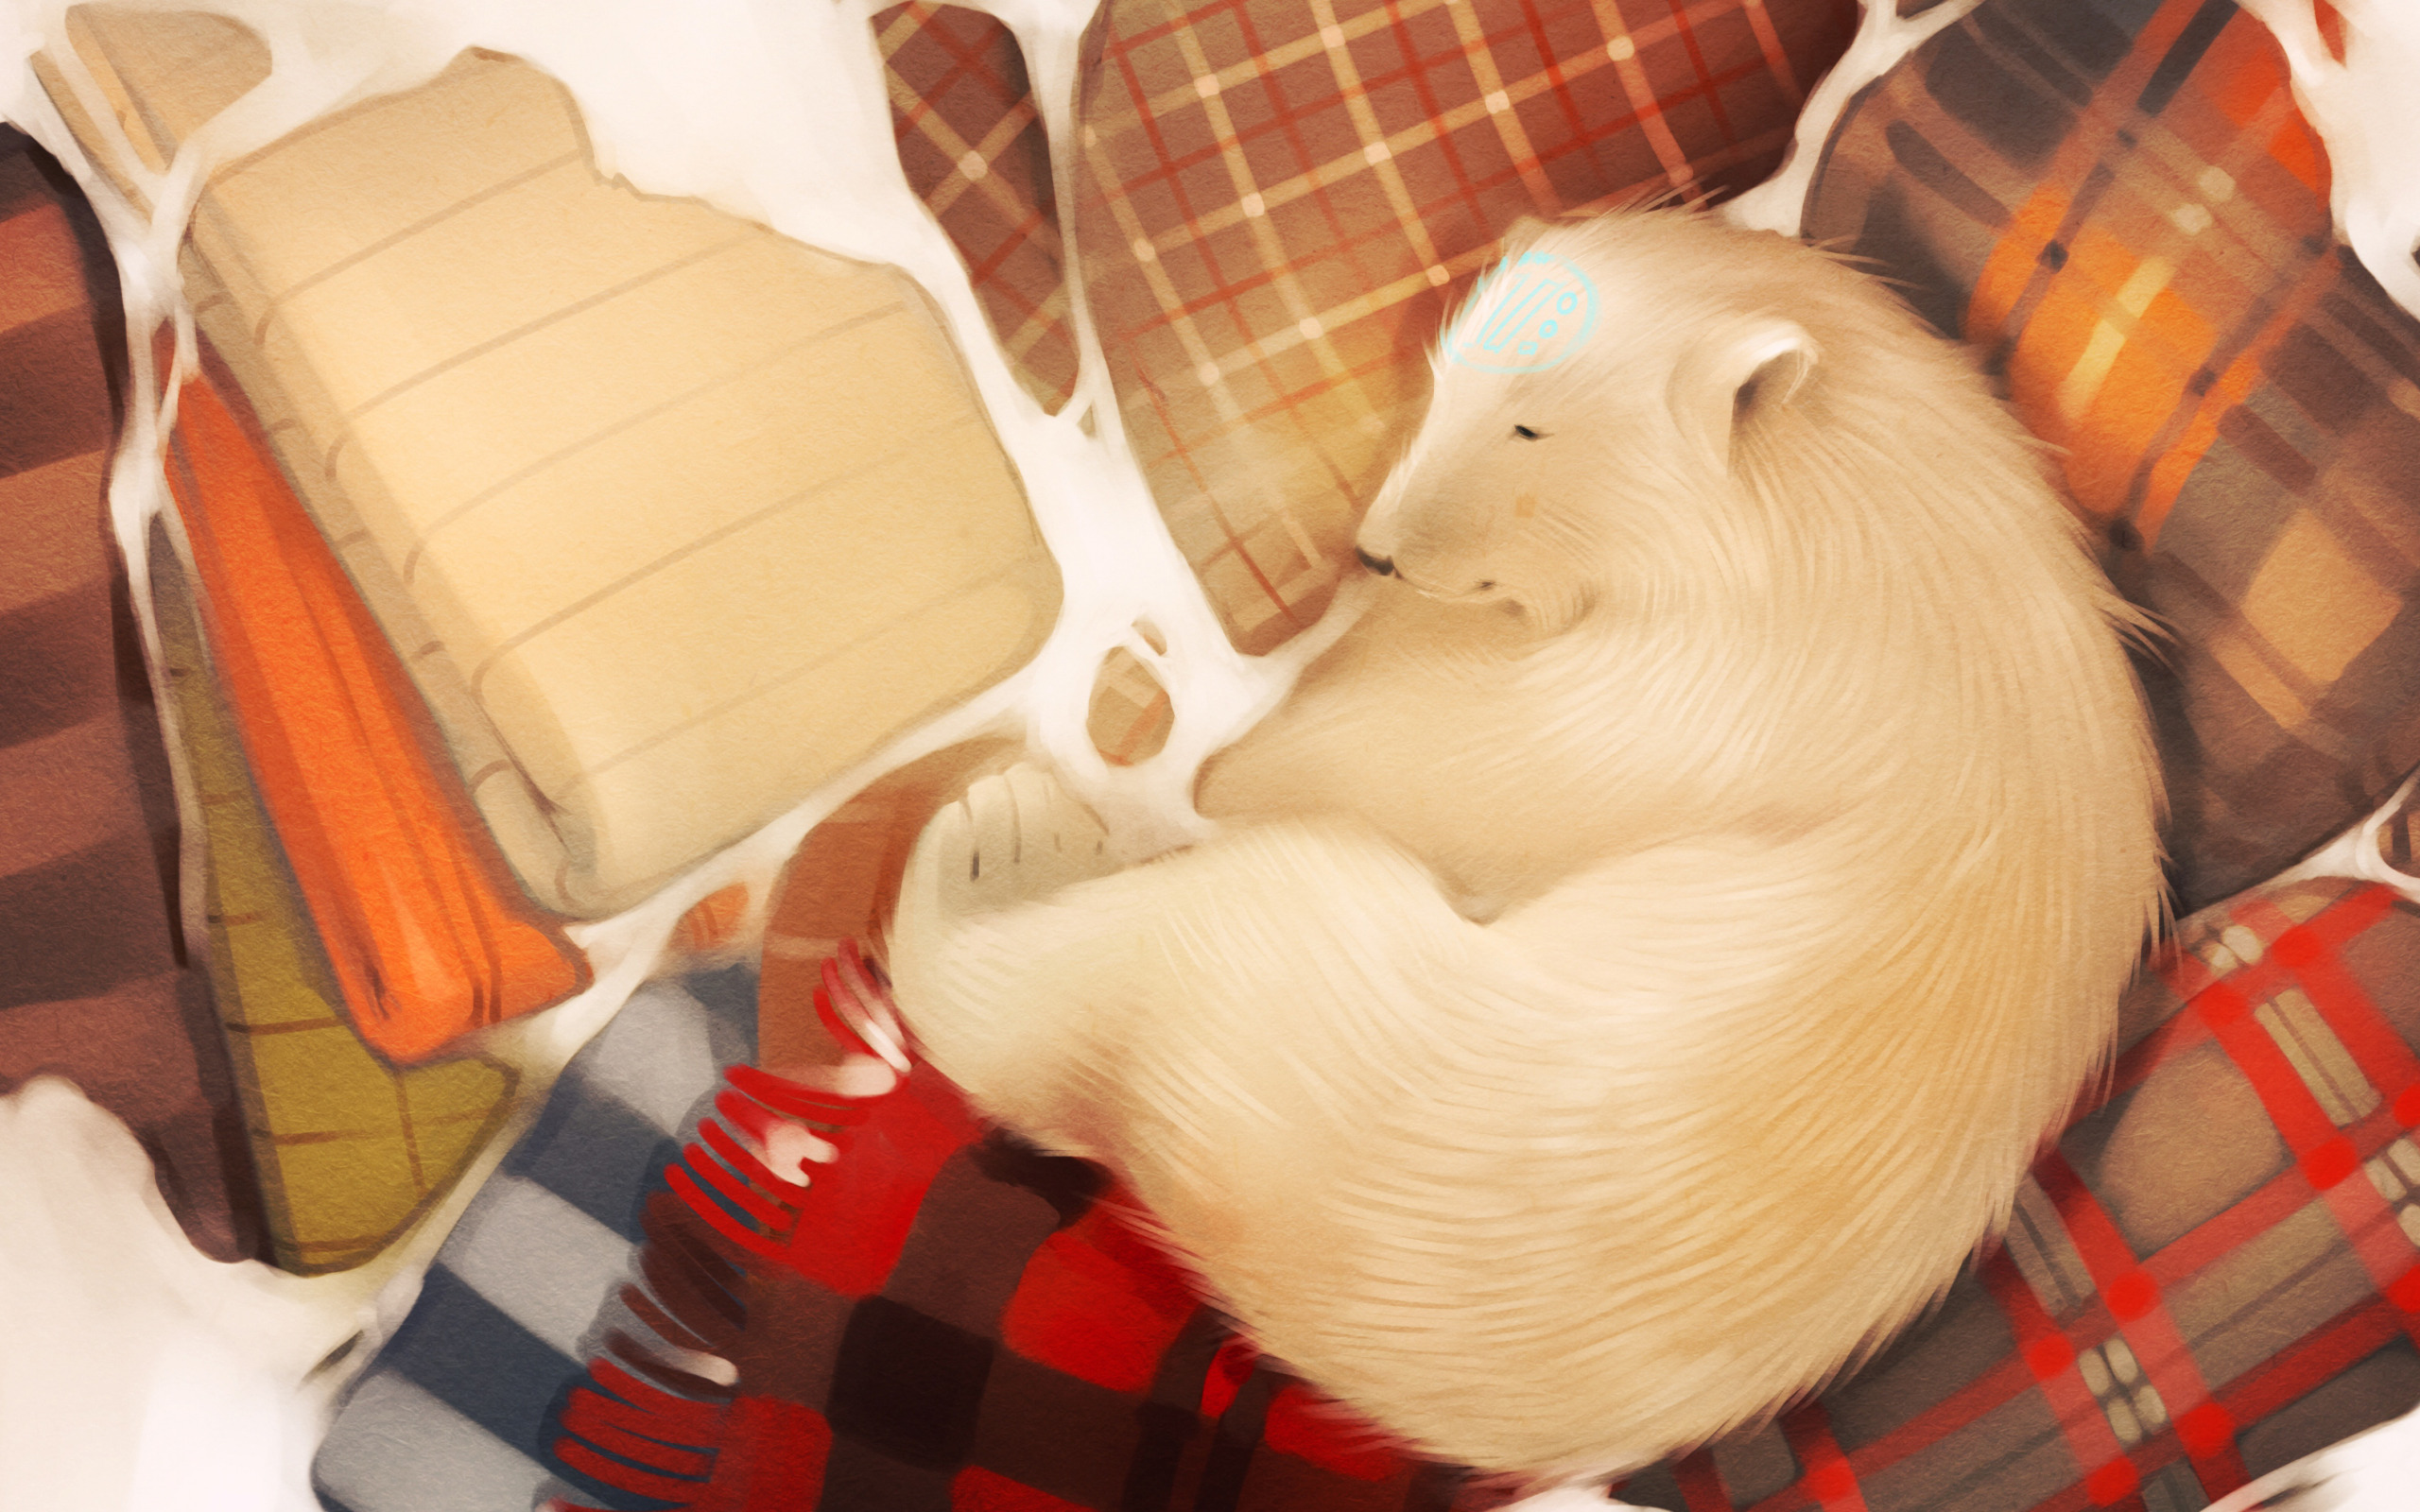 Одеяло с мишками. Медведь в одеяле. Медведь под одеялом. Медведь в одеялке. Спать игрушки одеяло